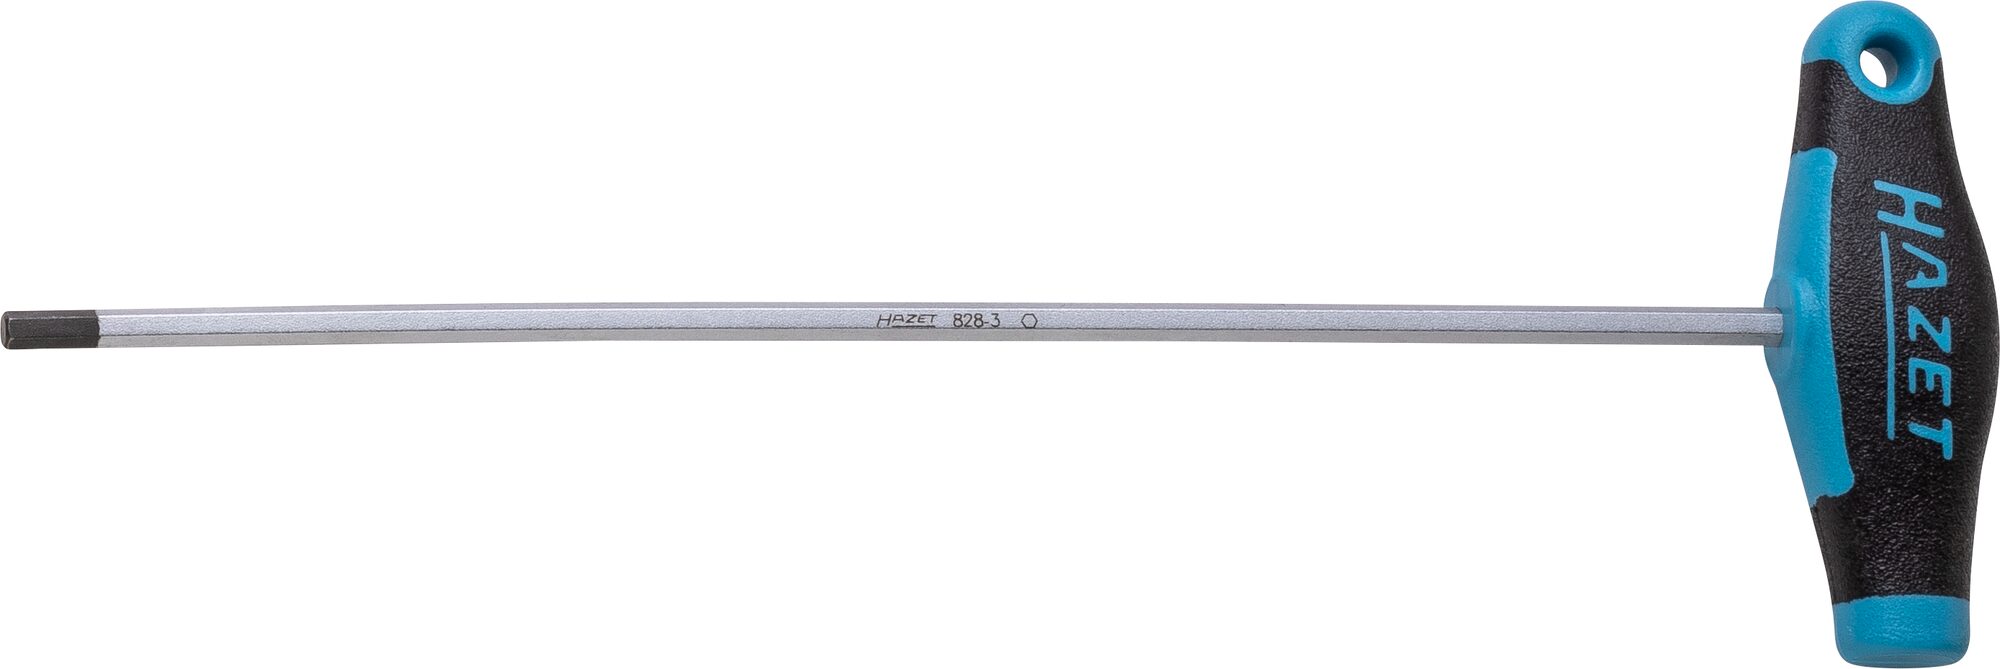 HAZET Schraubendreher · mit T-Griff 828-3 · Innen Sechskant Profil · 3 mm